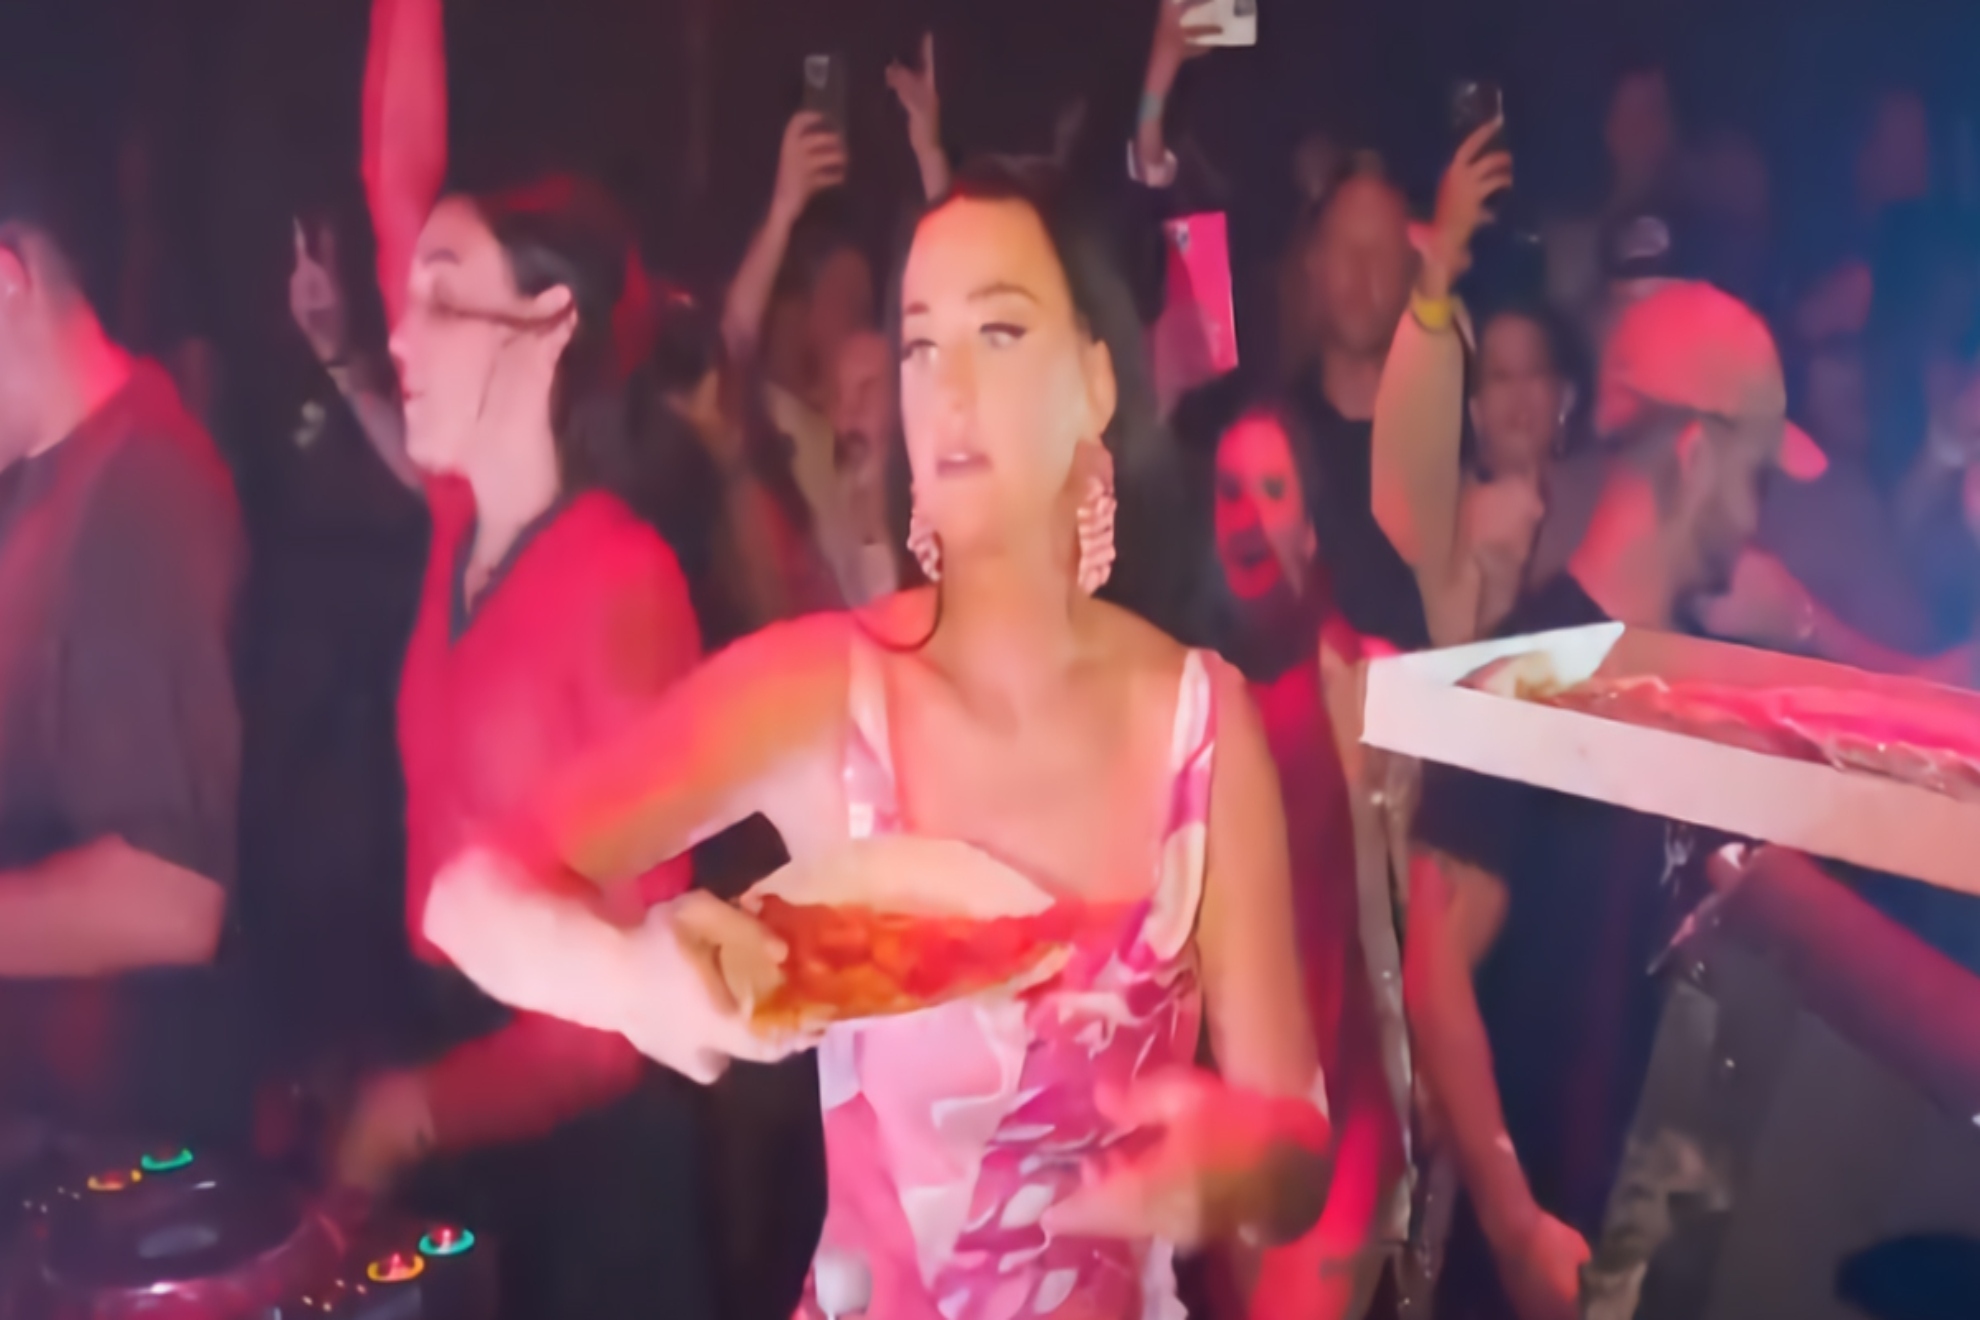 Katy Perry, en el momento en que lanza pizza al público.